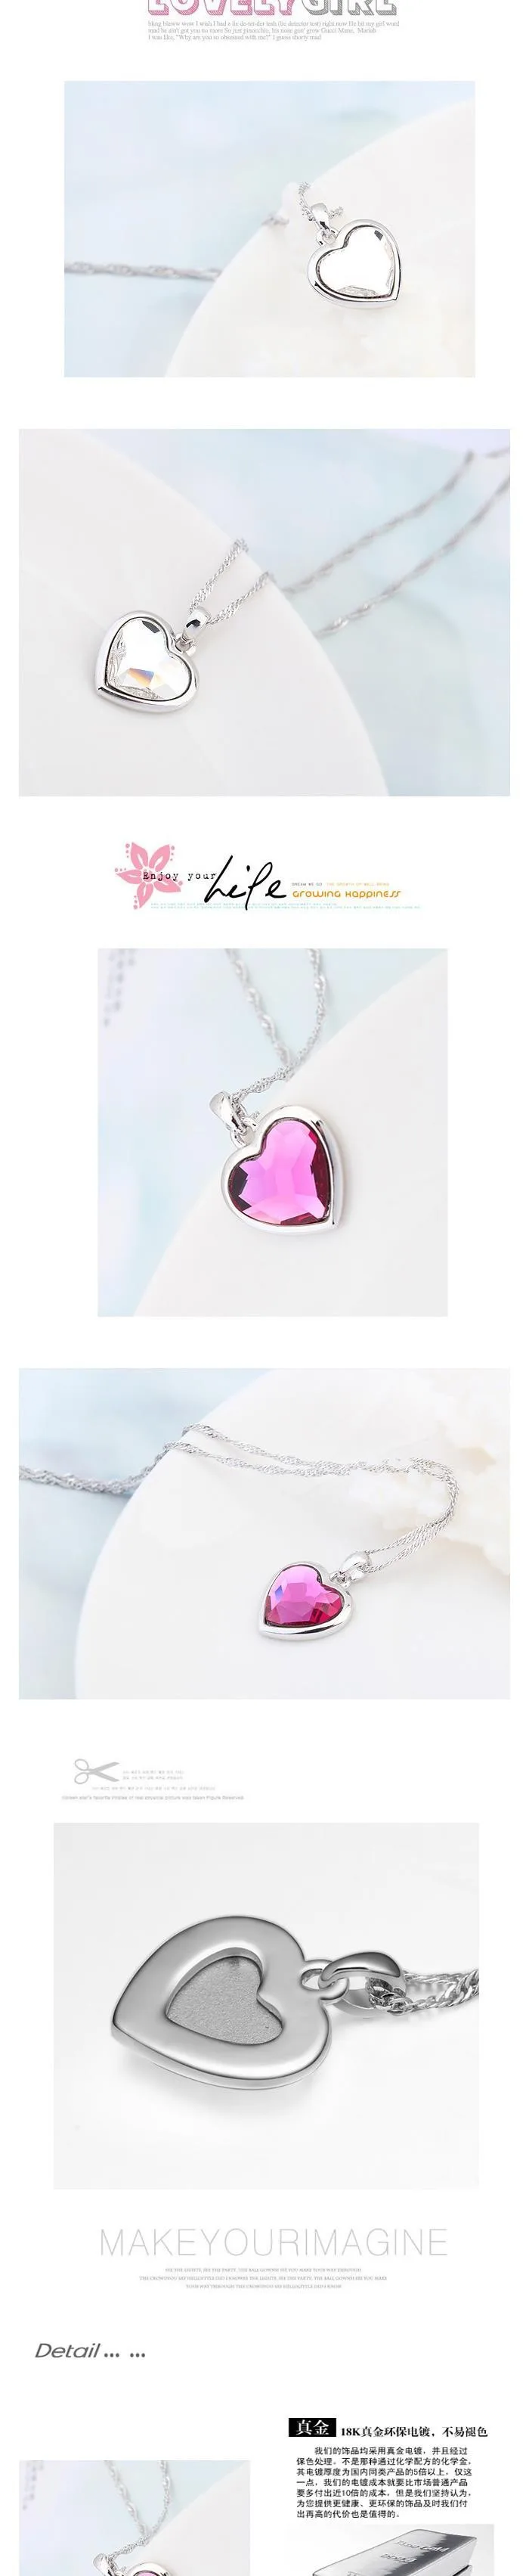 BeBella розовая подвеска в форме сердца с кристаллами ожерелье с кристаллами от Swarovski для женщин девочек модные ювелирные изделия подарок на день рождения